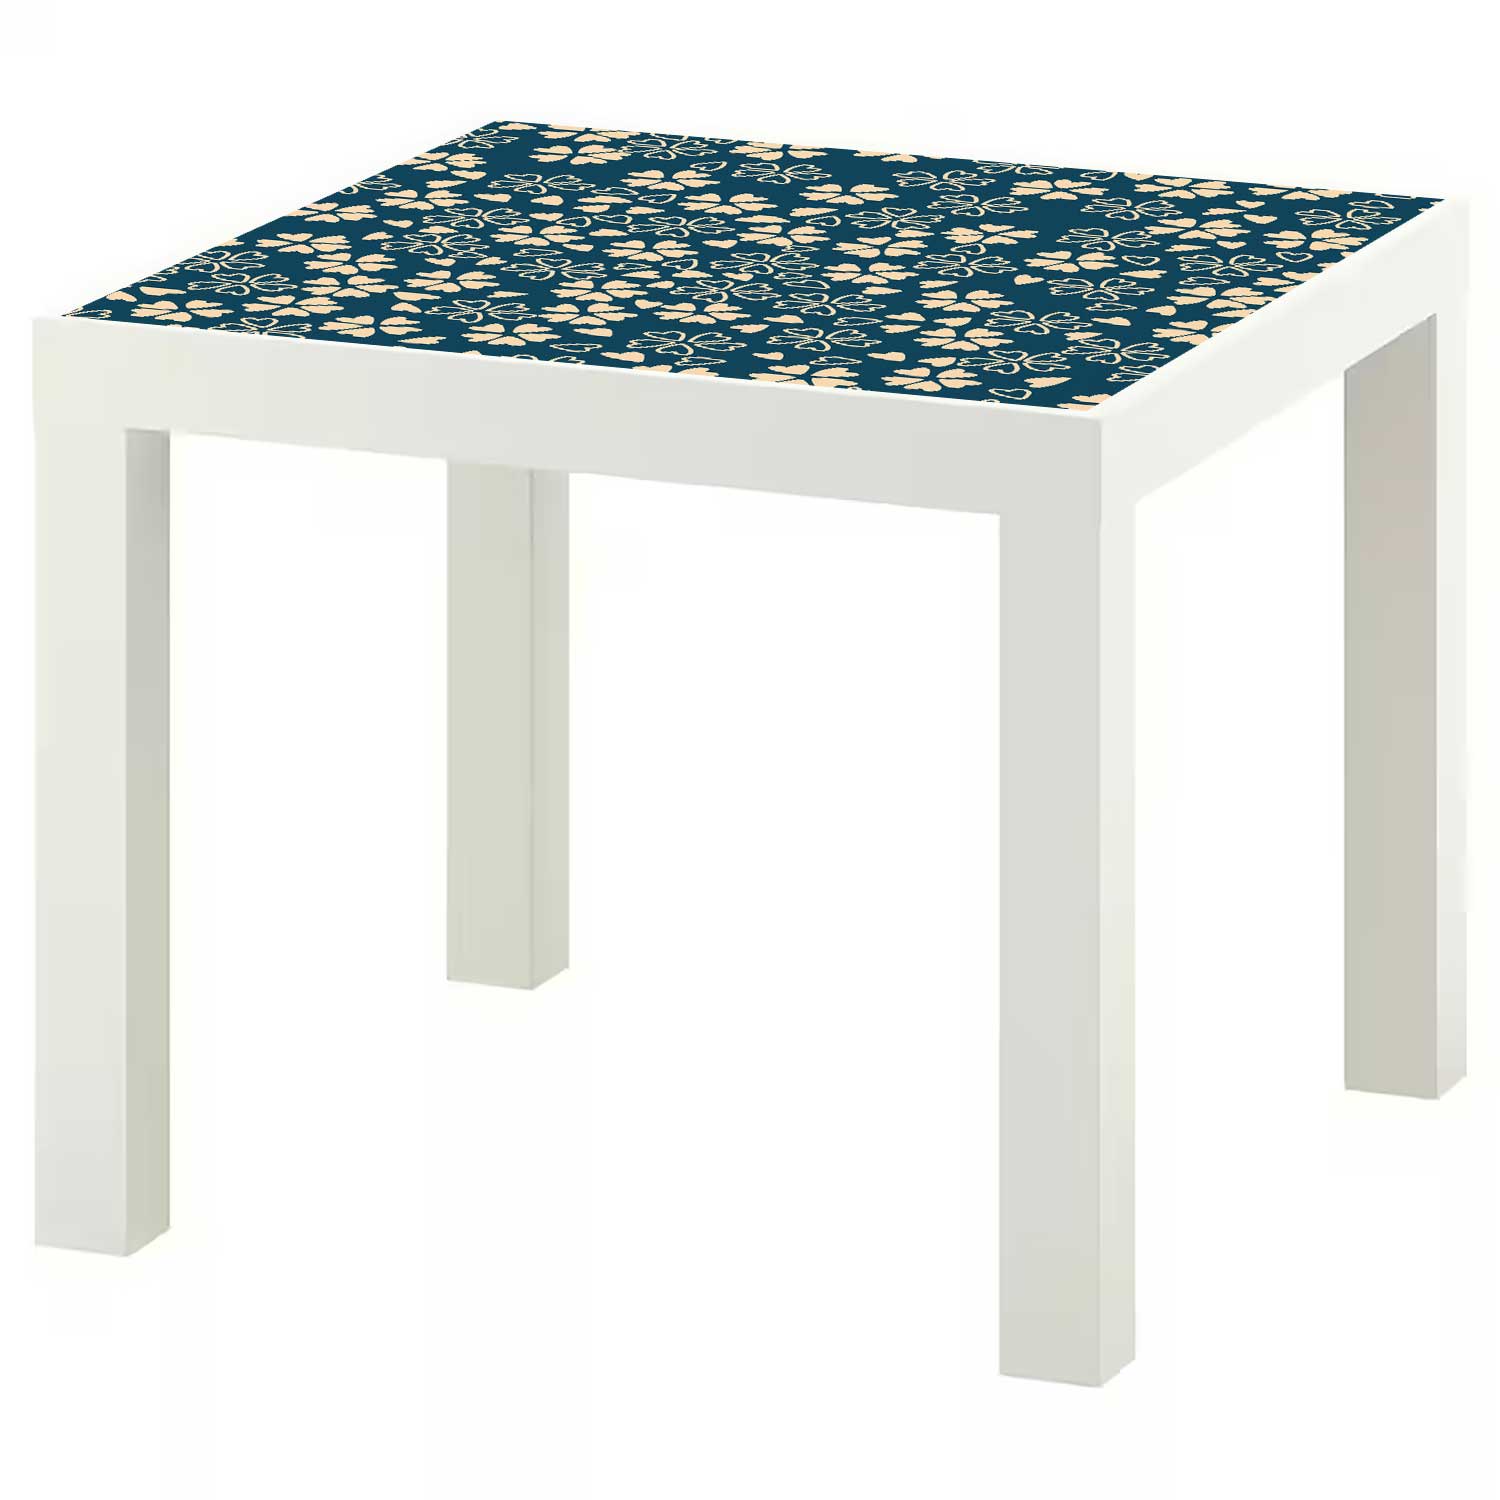 Möbelfolie für IKEA Lack Tisch 55x55 cm 'Blüten'